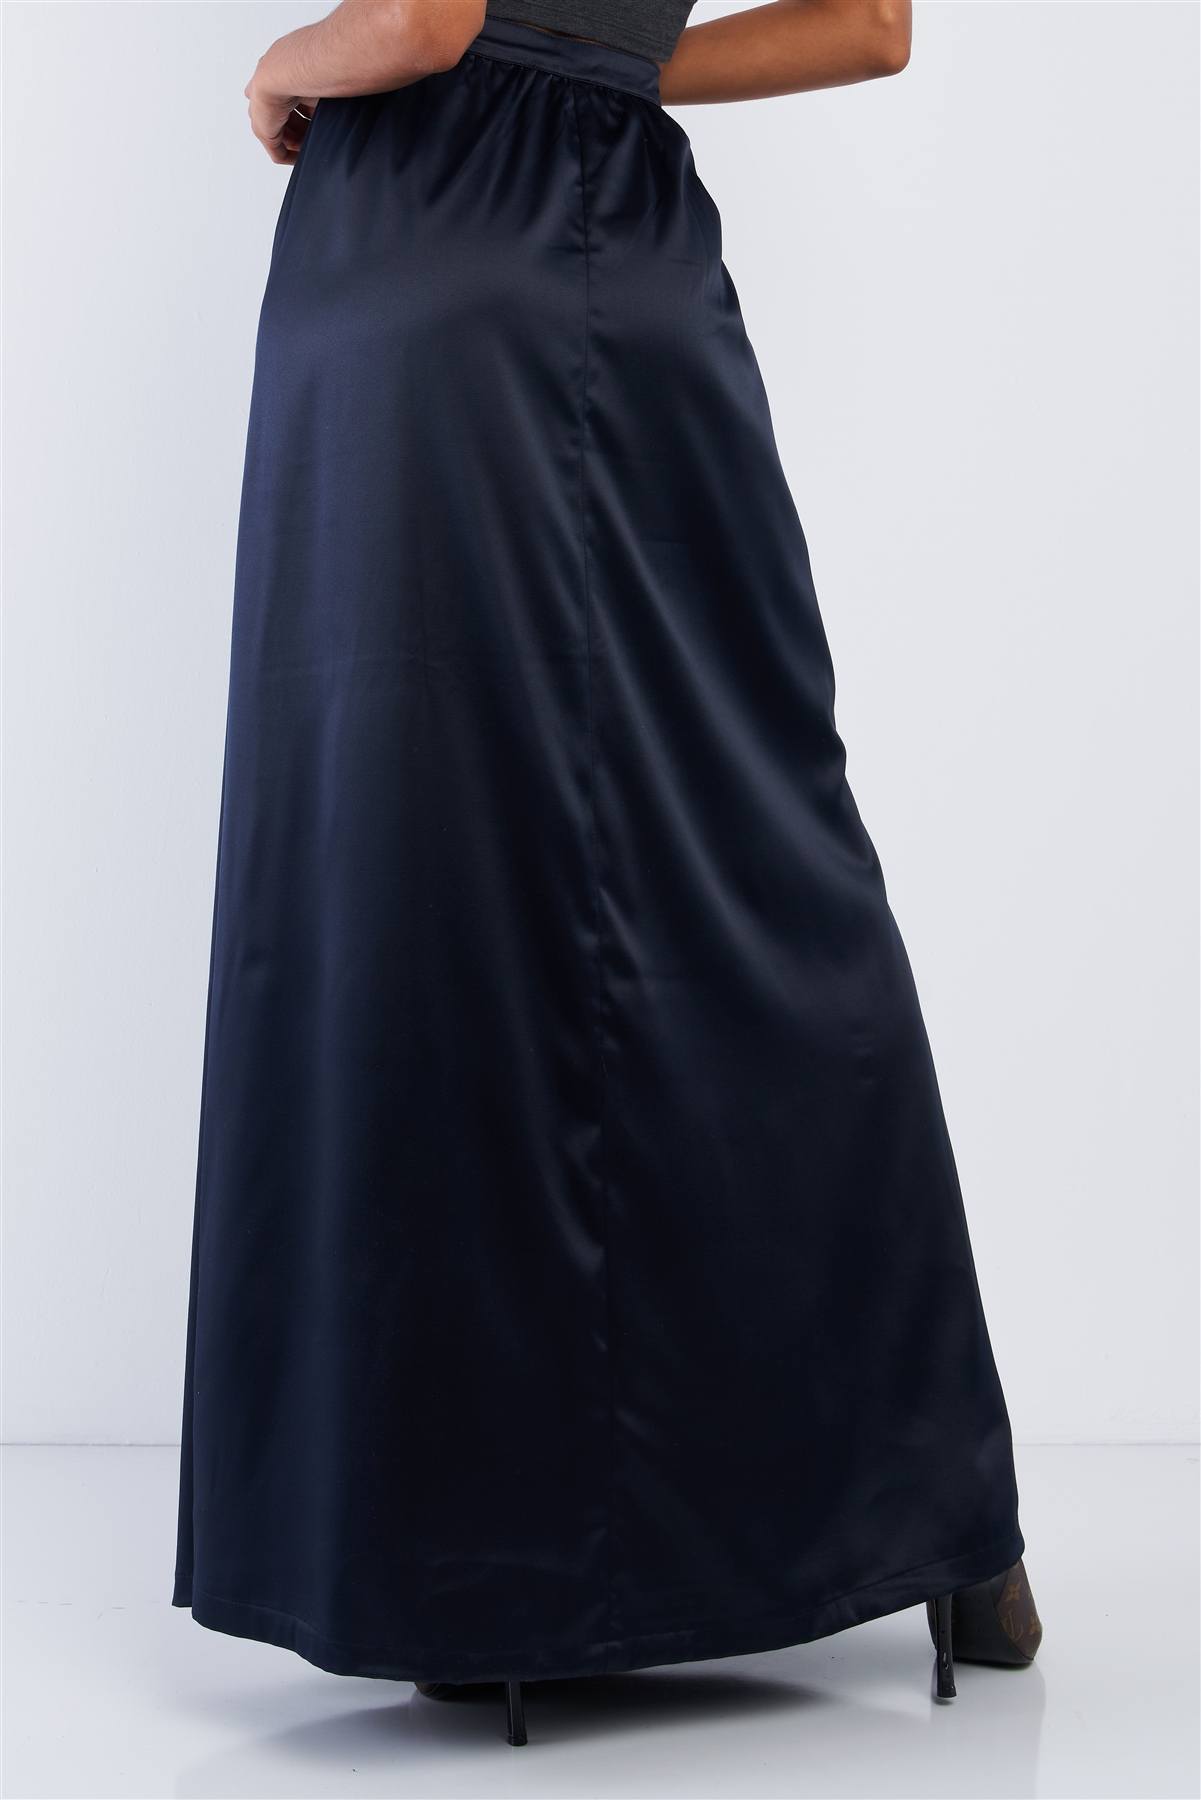 Solid Navy Blue Satin High Waist Flowing Maxi Skirt